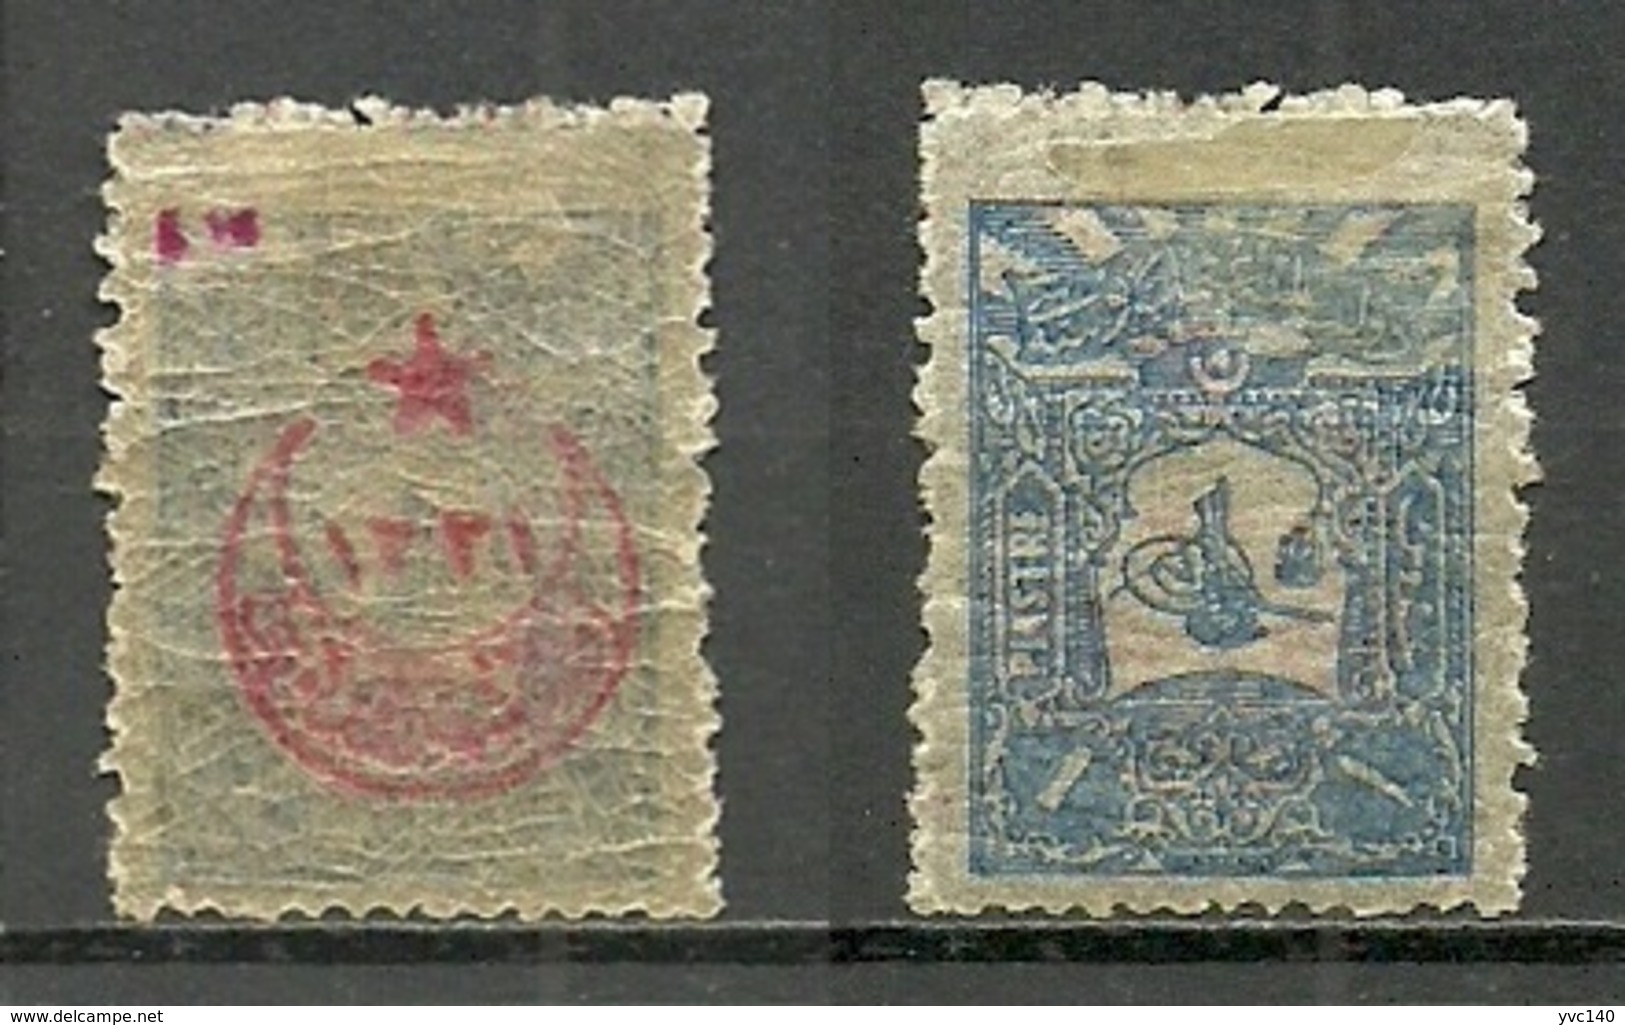 Turkey; 1916 Overprinted War Issue Stamp 1 K. ERROR "Overprint On Back Only" (Signed) - Unused Stamps